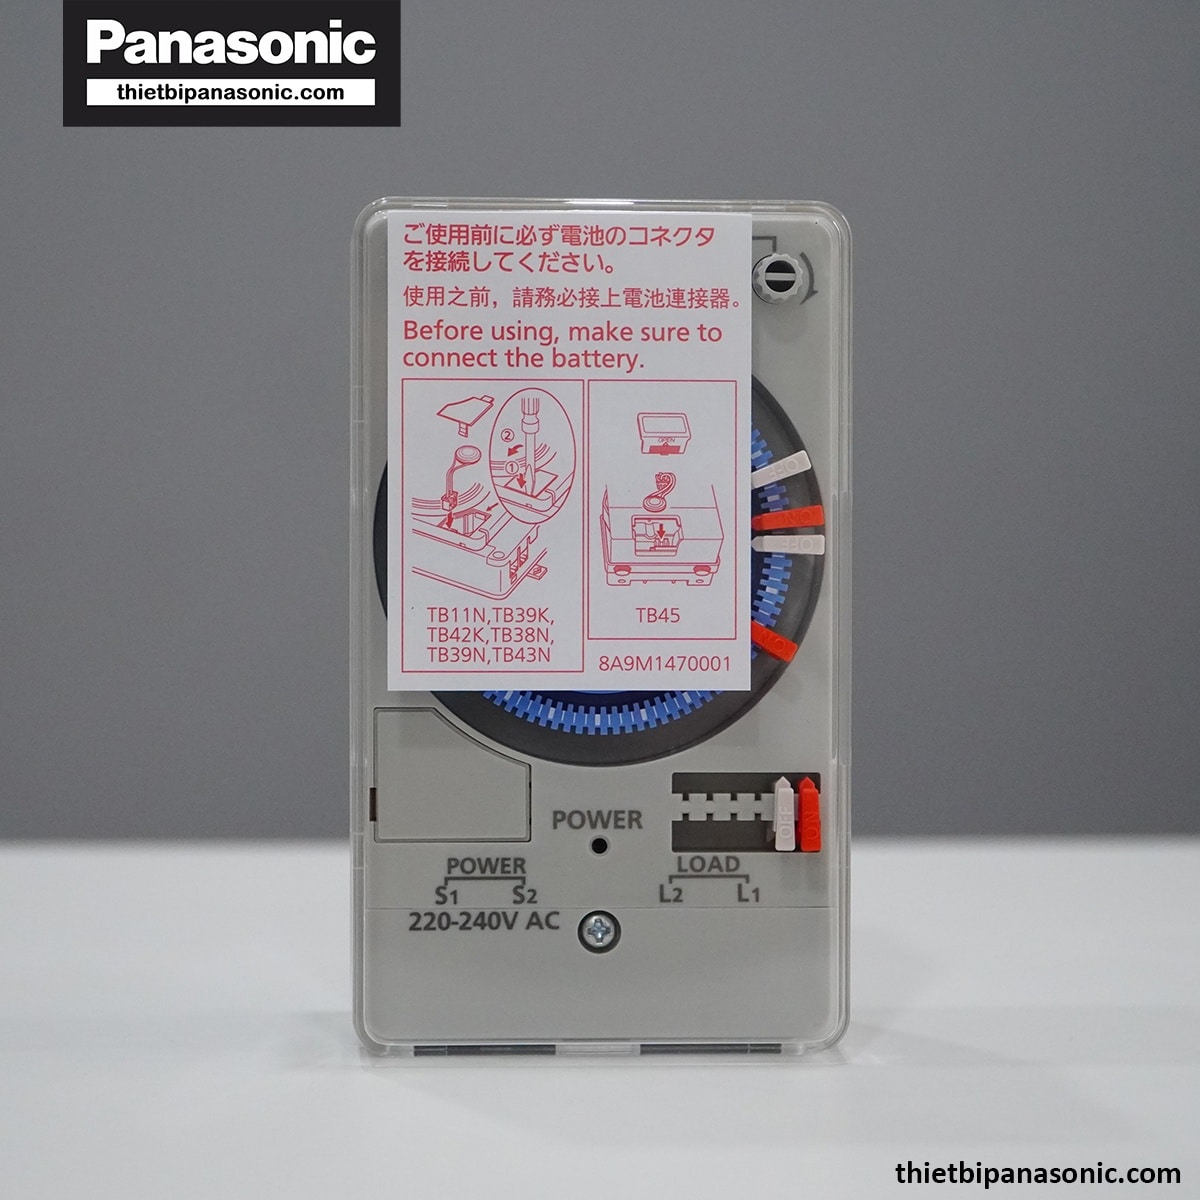 Mua Công tắc đồng hồ Panasonic TB118 giá rẻ, chính hãng tại thietbipanasonic.com